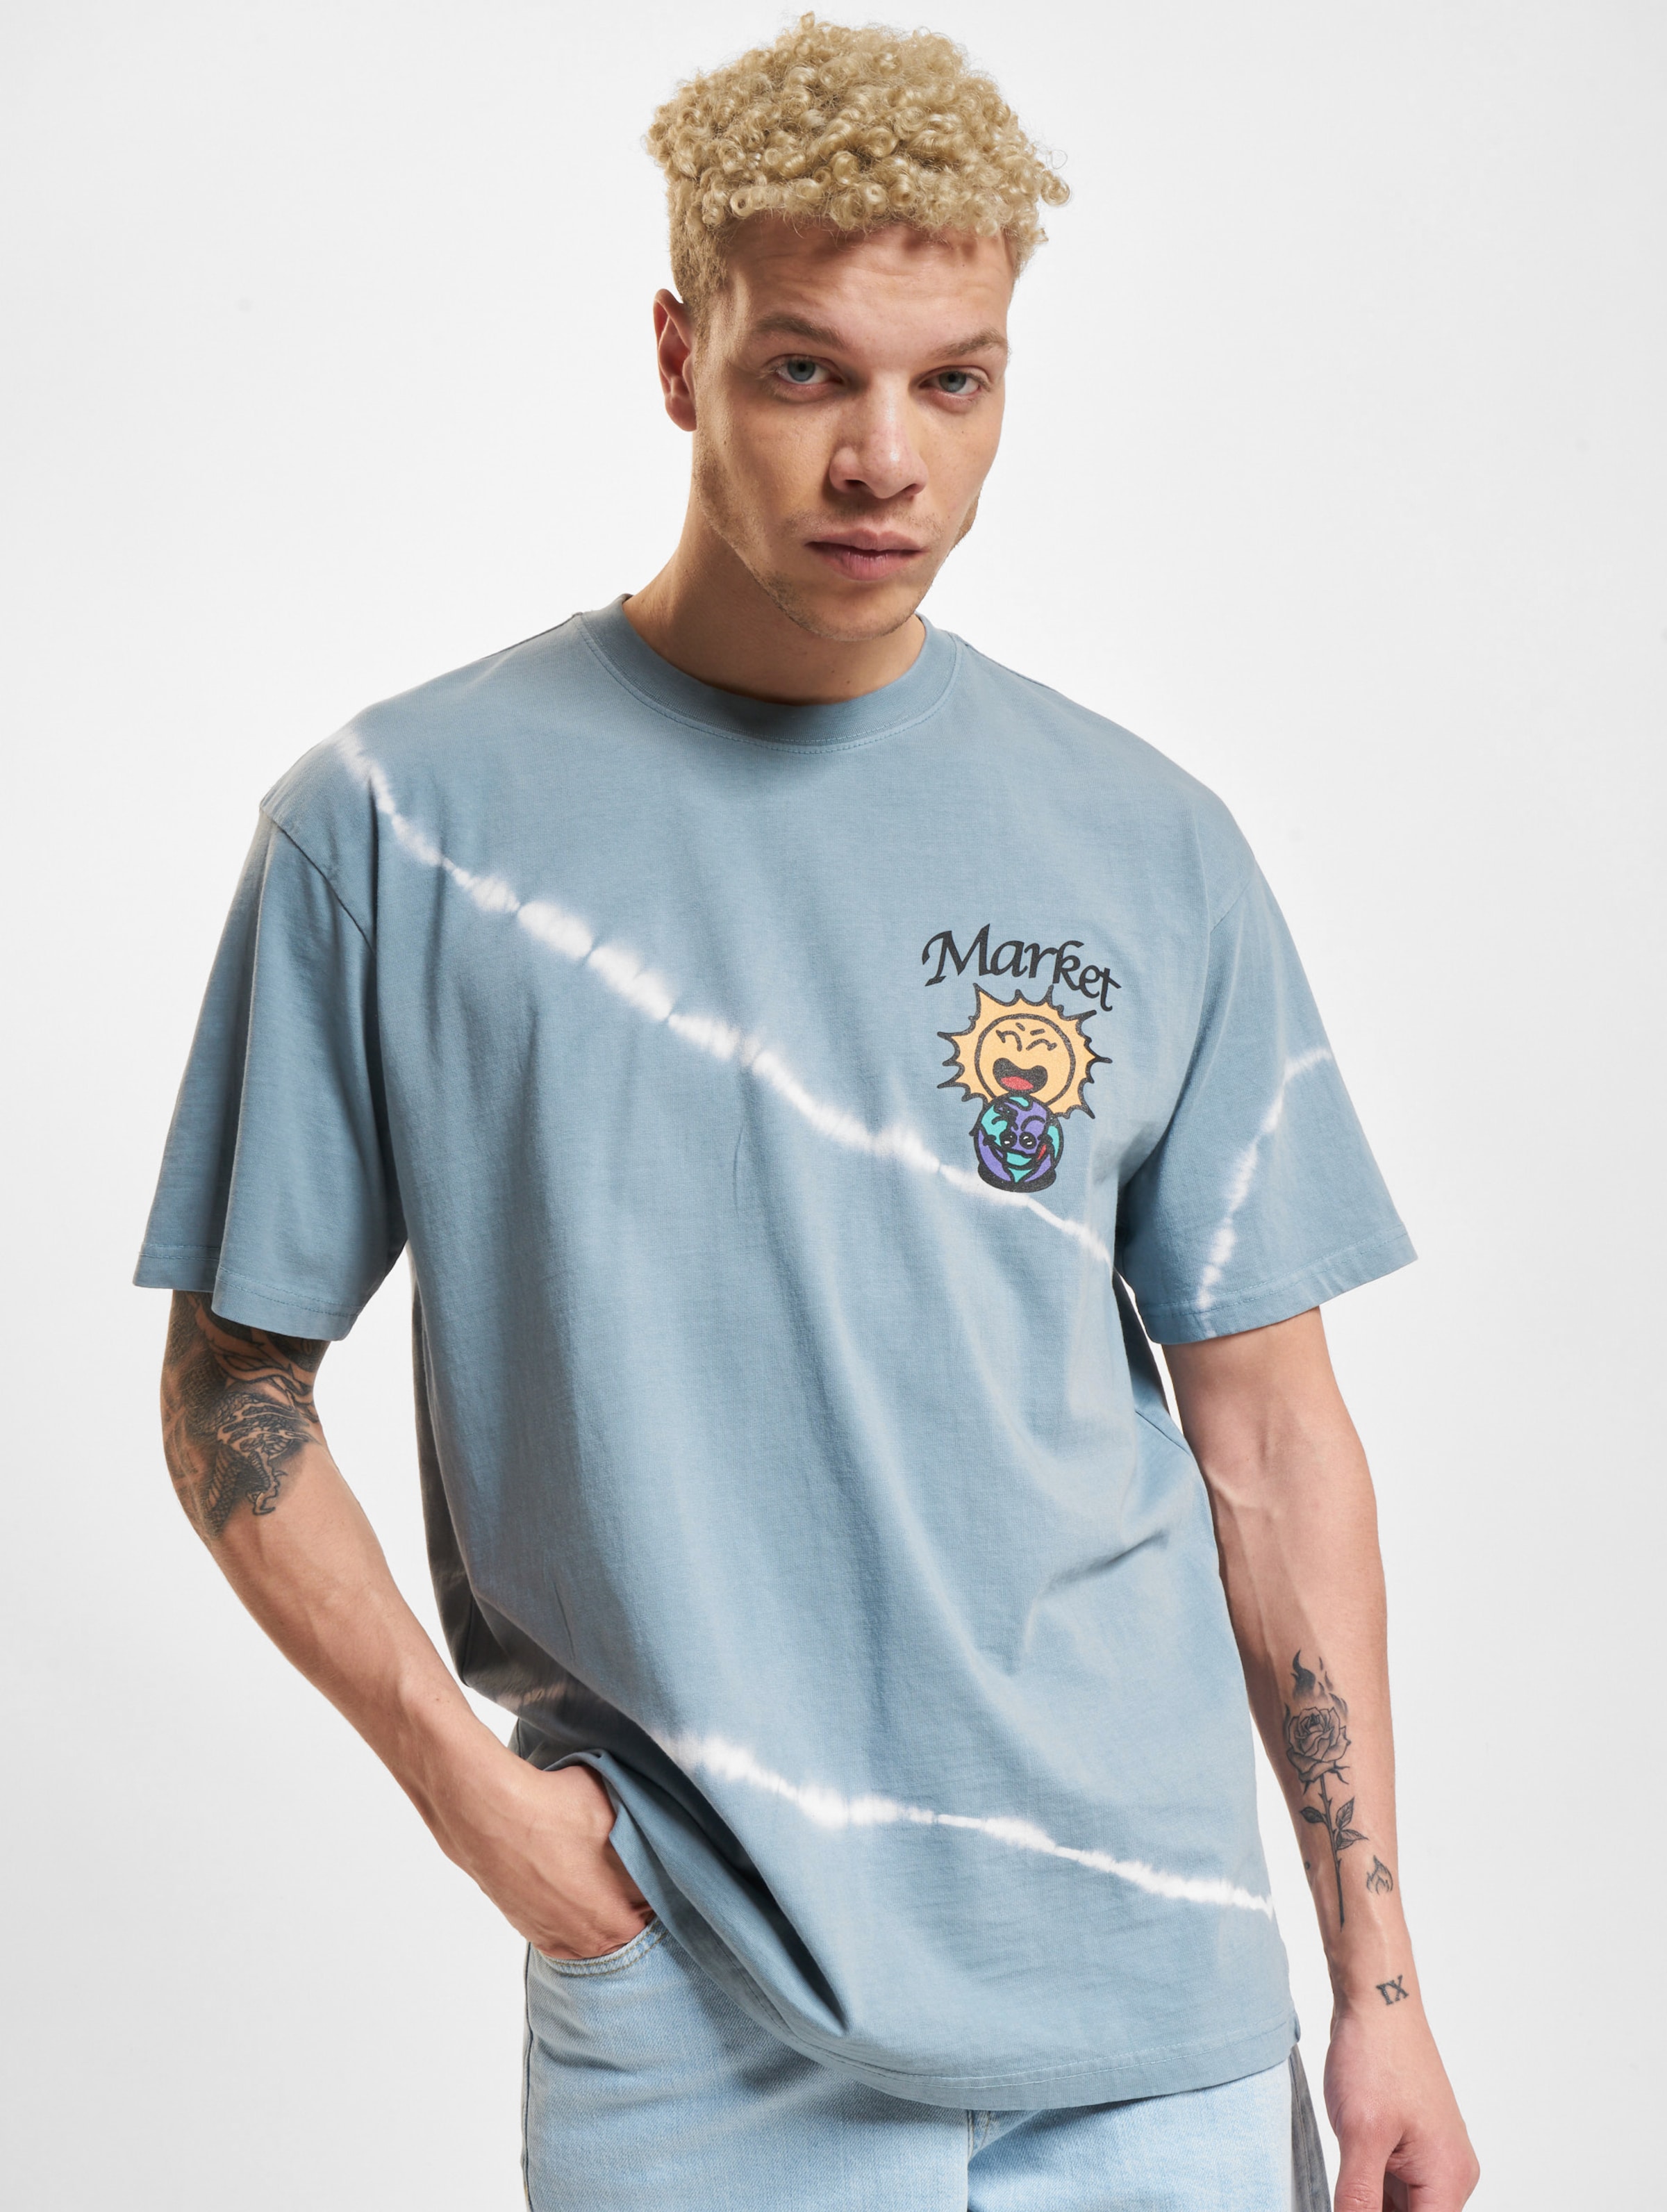 Market Leave No Trace T-Shirts Männer,Unisex op kleur blauw, Maat S